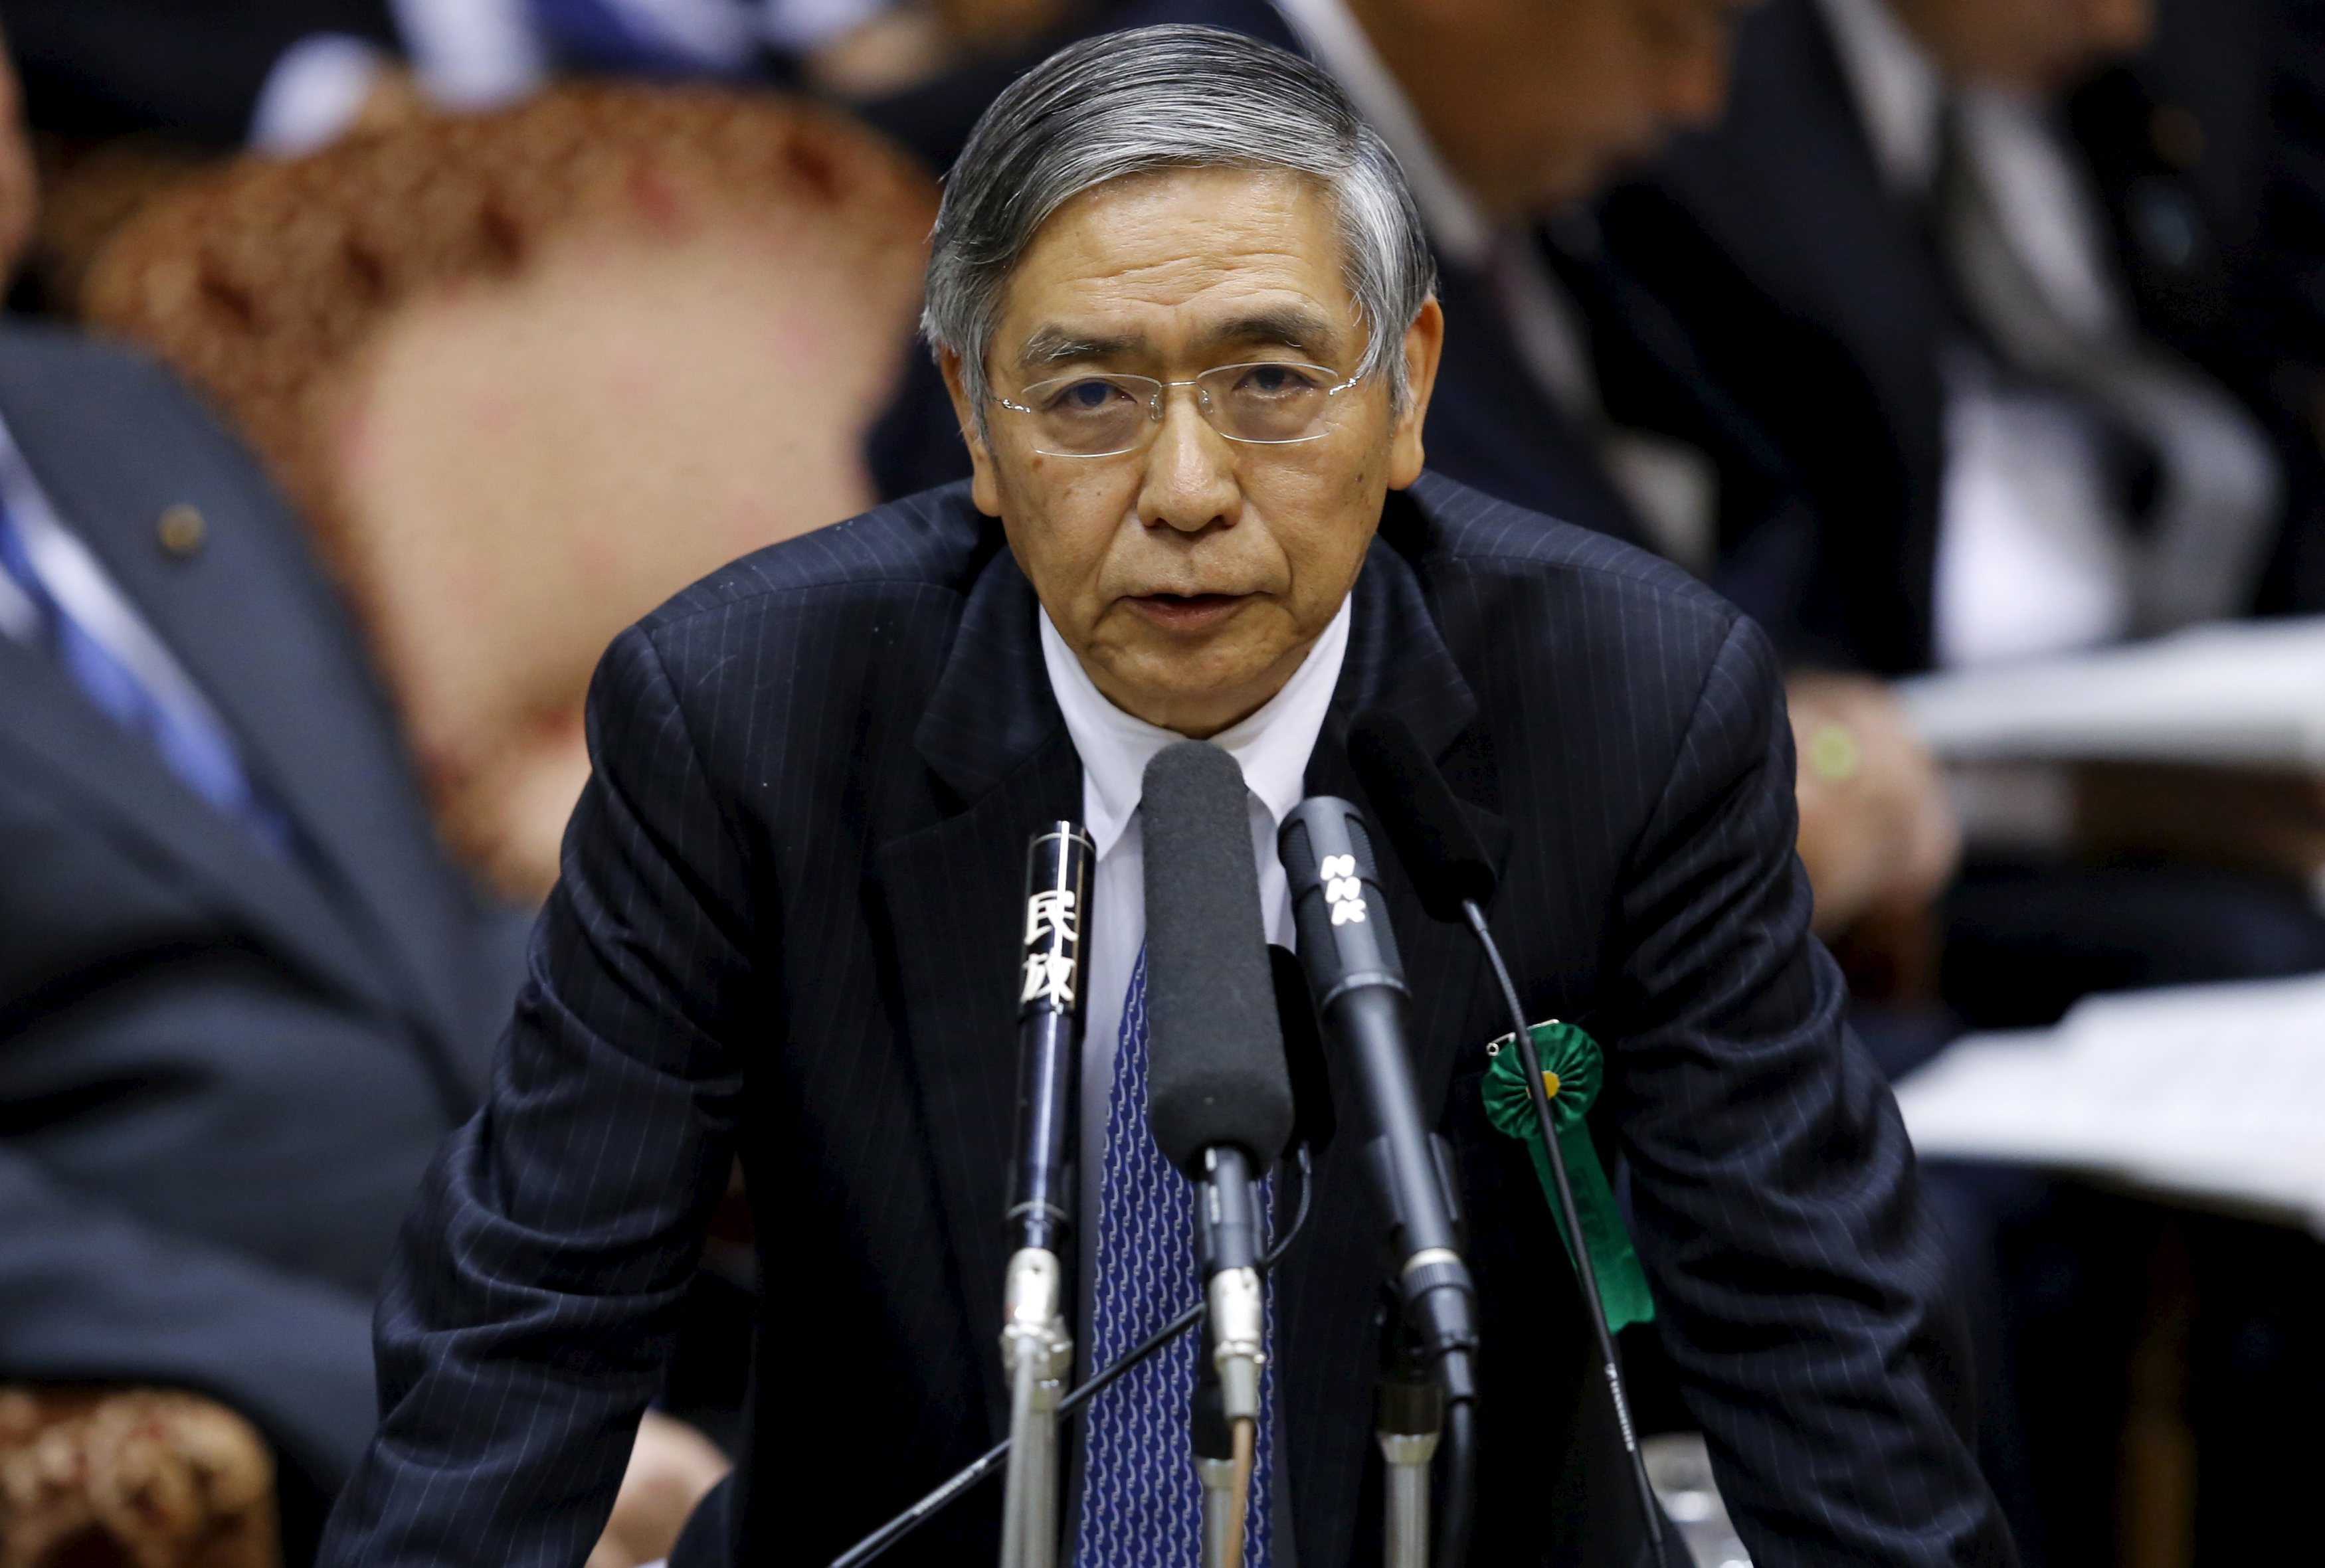 Bank of Japan Gov. Haruhiko Kuroda speaks during an Upper House committee session on Thursday. | REUTERS